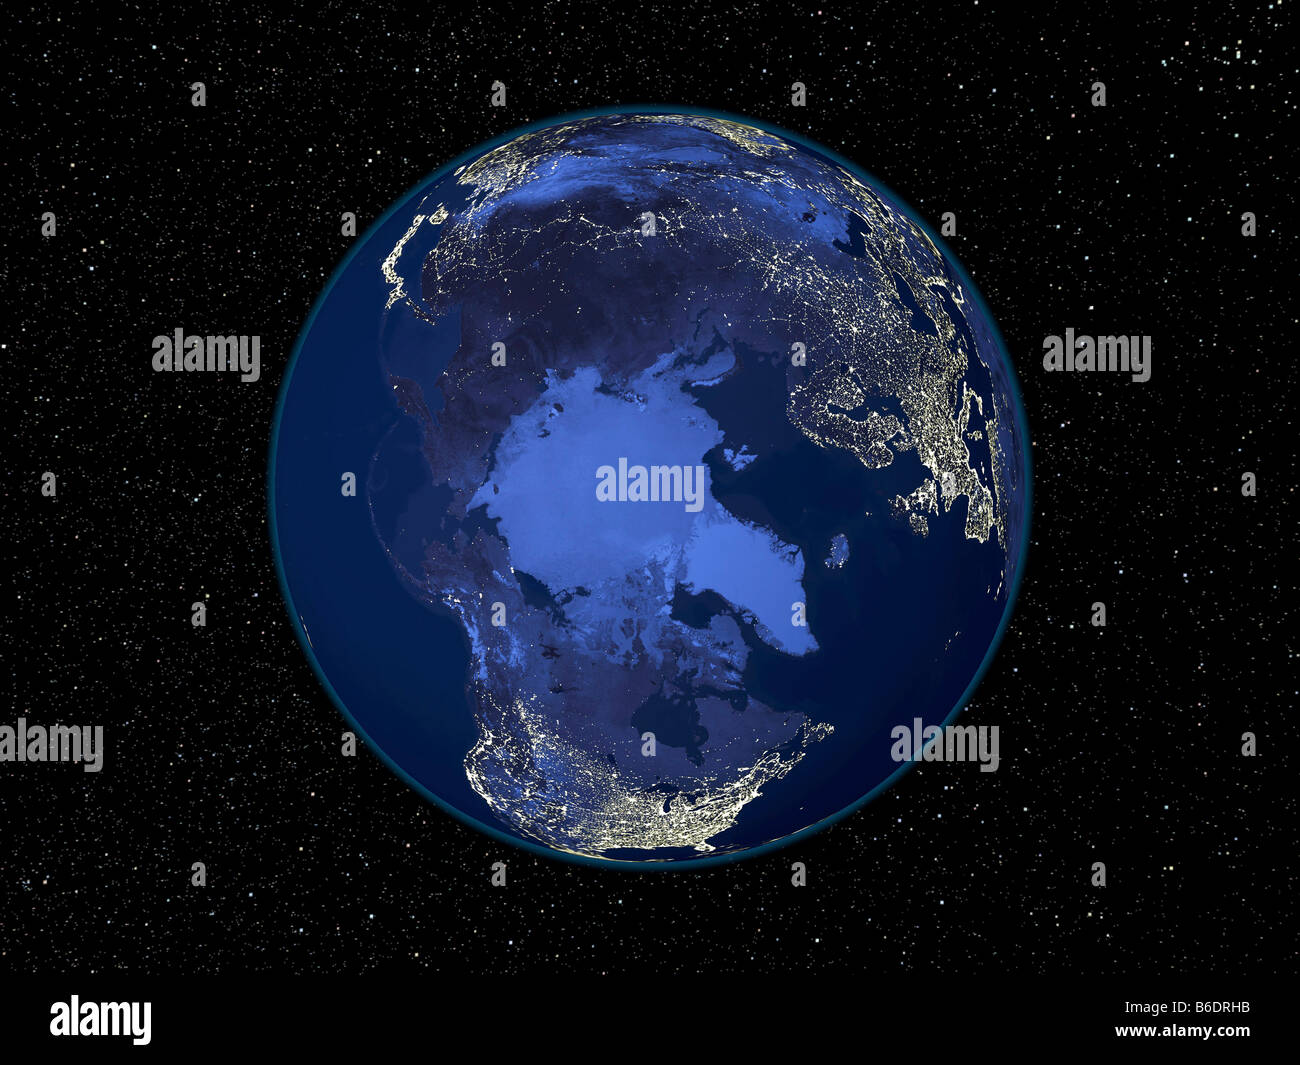 L'Artico di notte. Immagine satellitare della "paura" che di notte, impostata su uno sfondo di stelle, centrato sull'Artico. Foto Stock